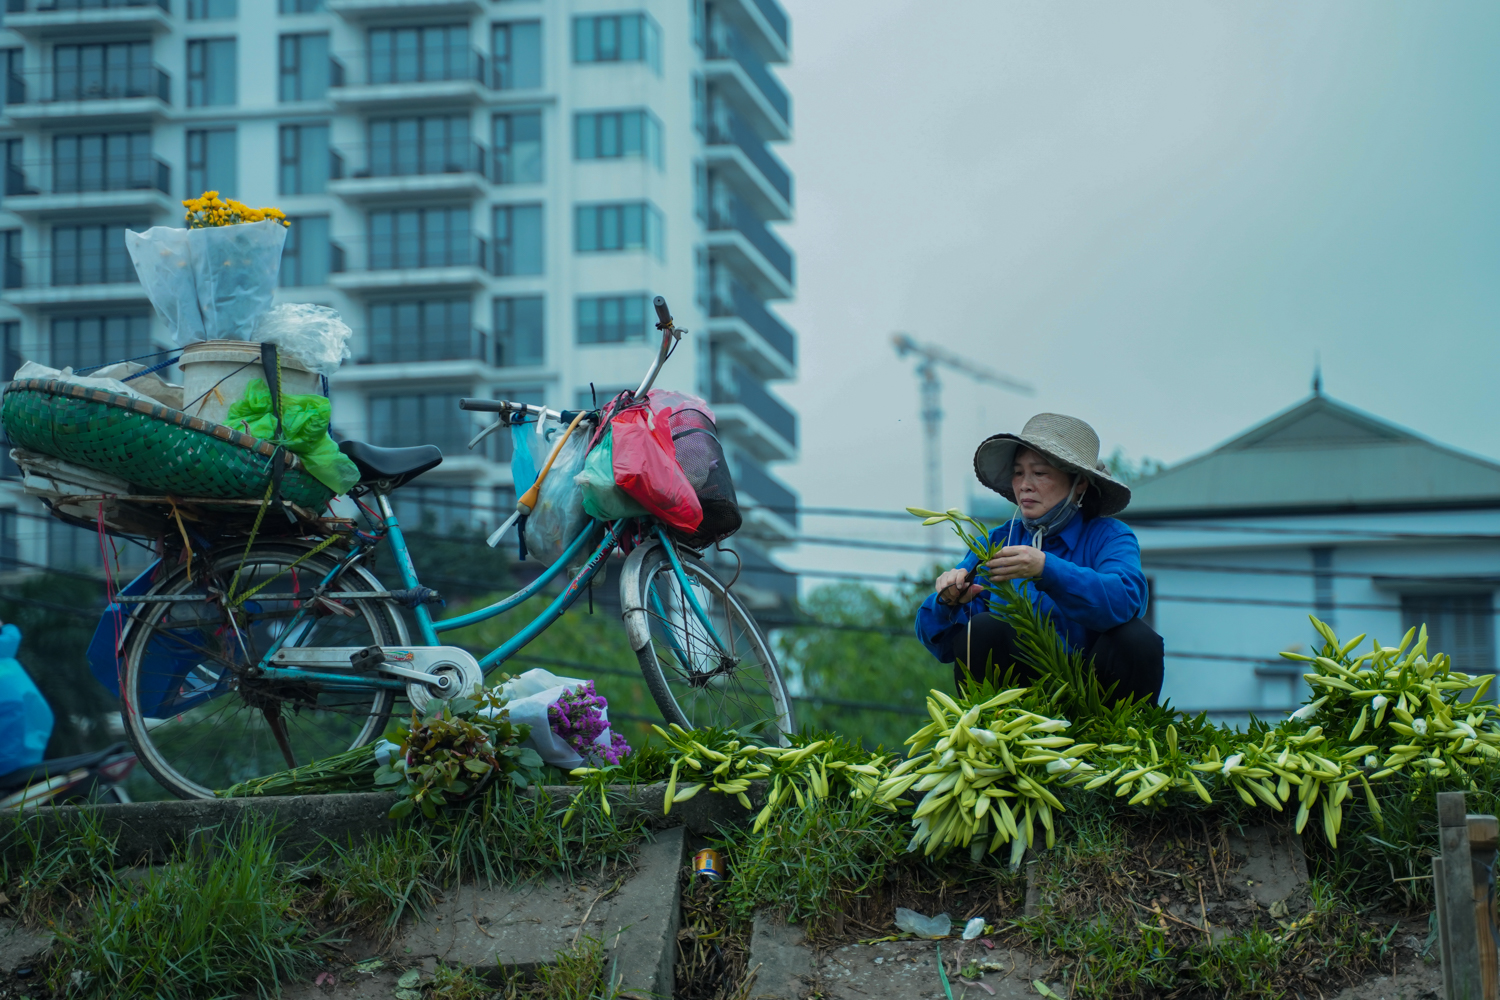 Hoa loa kèn tháng 4 ở thủ đô Hà Nội